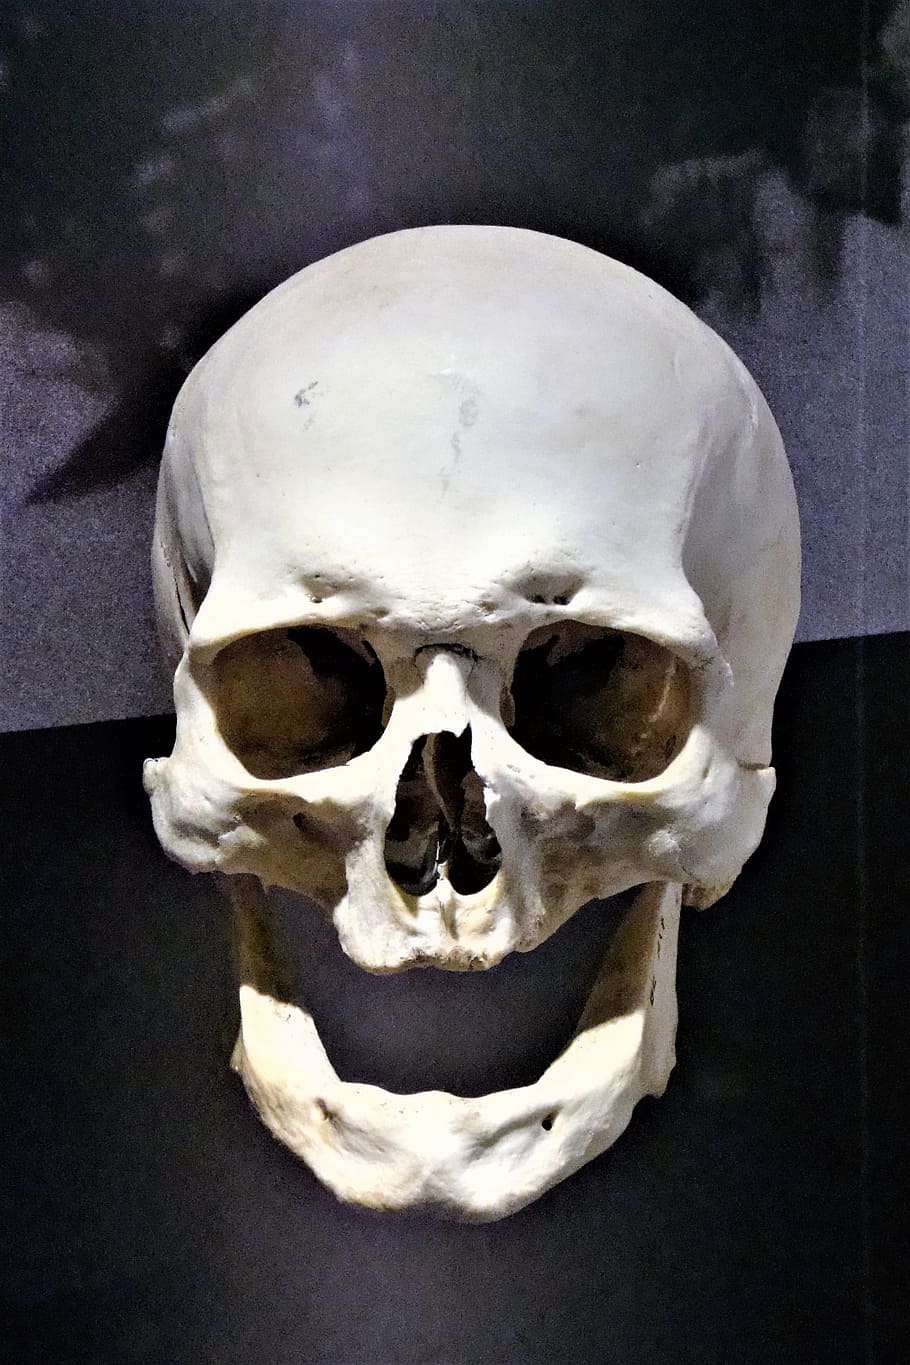 Bone, Weird, Skull And Crossbones, skull, creepy, human skull, human skeleton, human body part, human bone, spooky